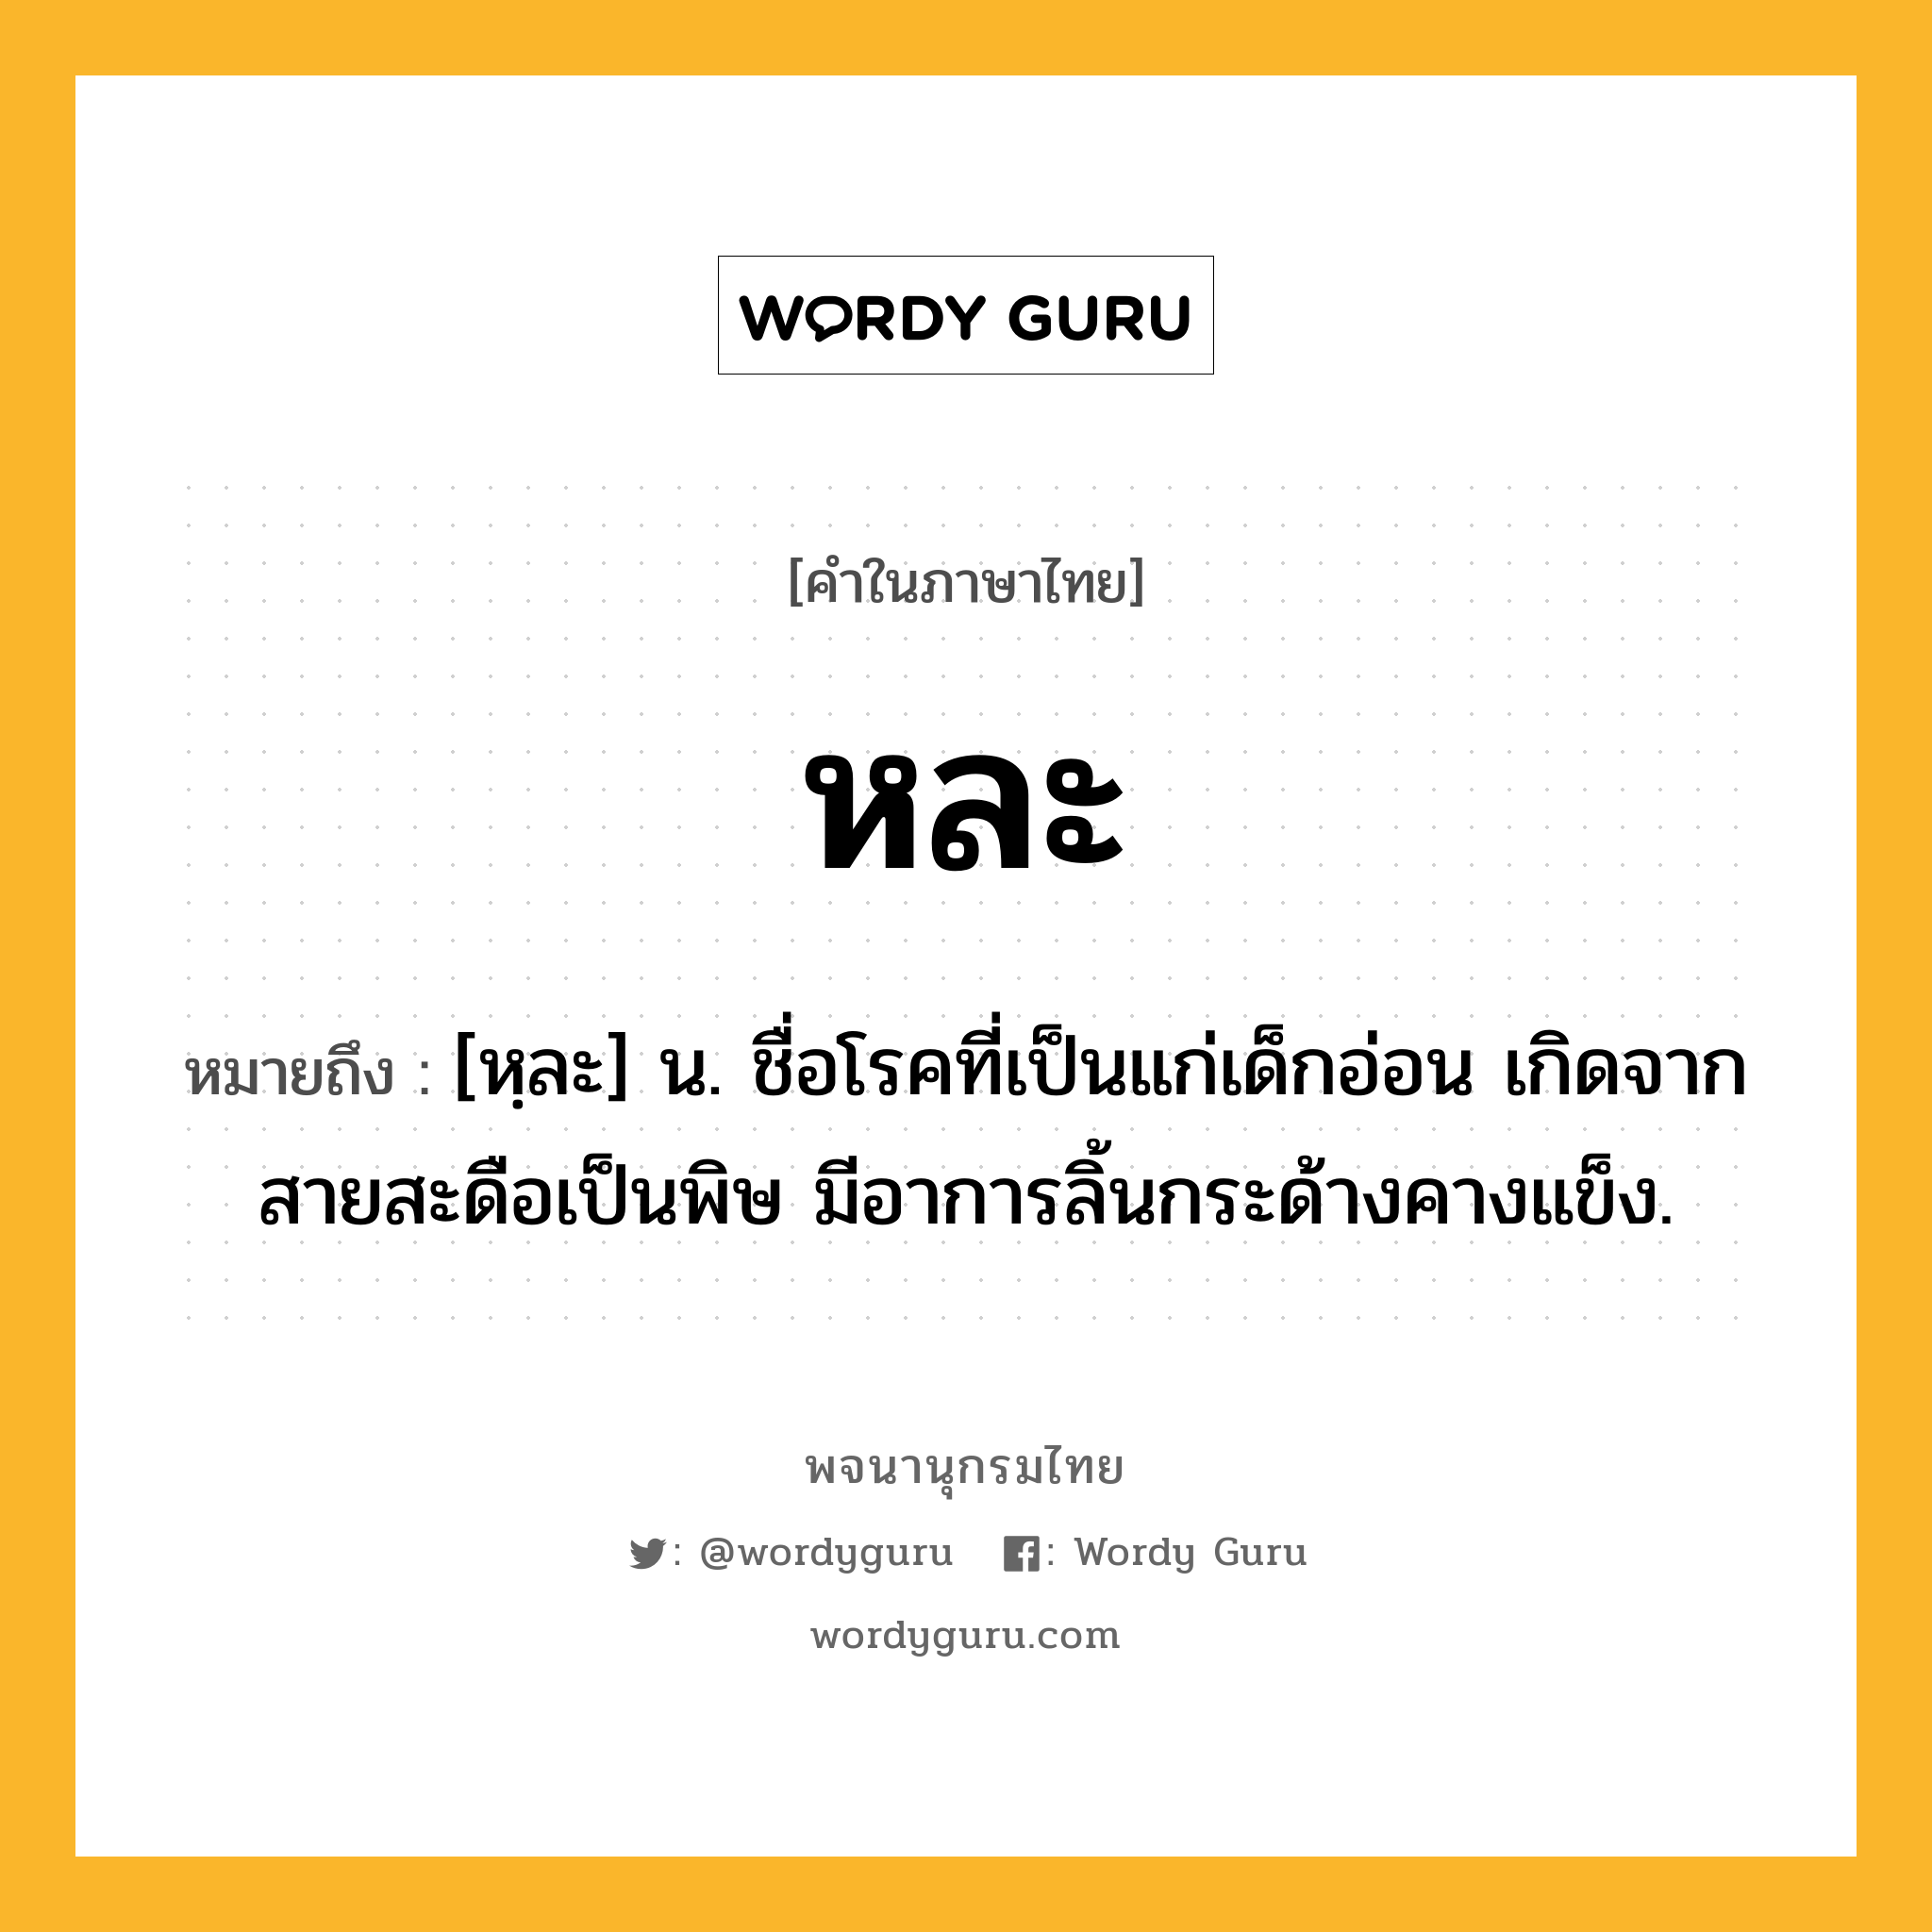 หละ ความหมาย หมายถึงอะไร?, คำในภาษาไทย หละ หมายถึง [หฺละ] น. ชื่อโรคที่เป็นแก่เด็กอ่อน เกิดจากสายสะดือเป็นพิษ มีอาการลิ้นกระด้างคางแข็ง.